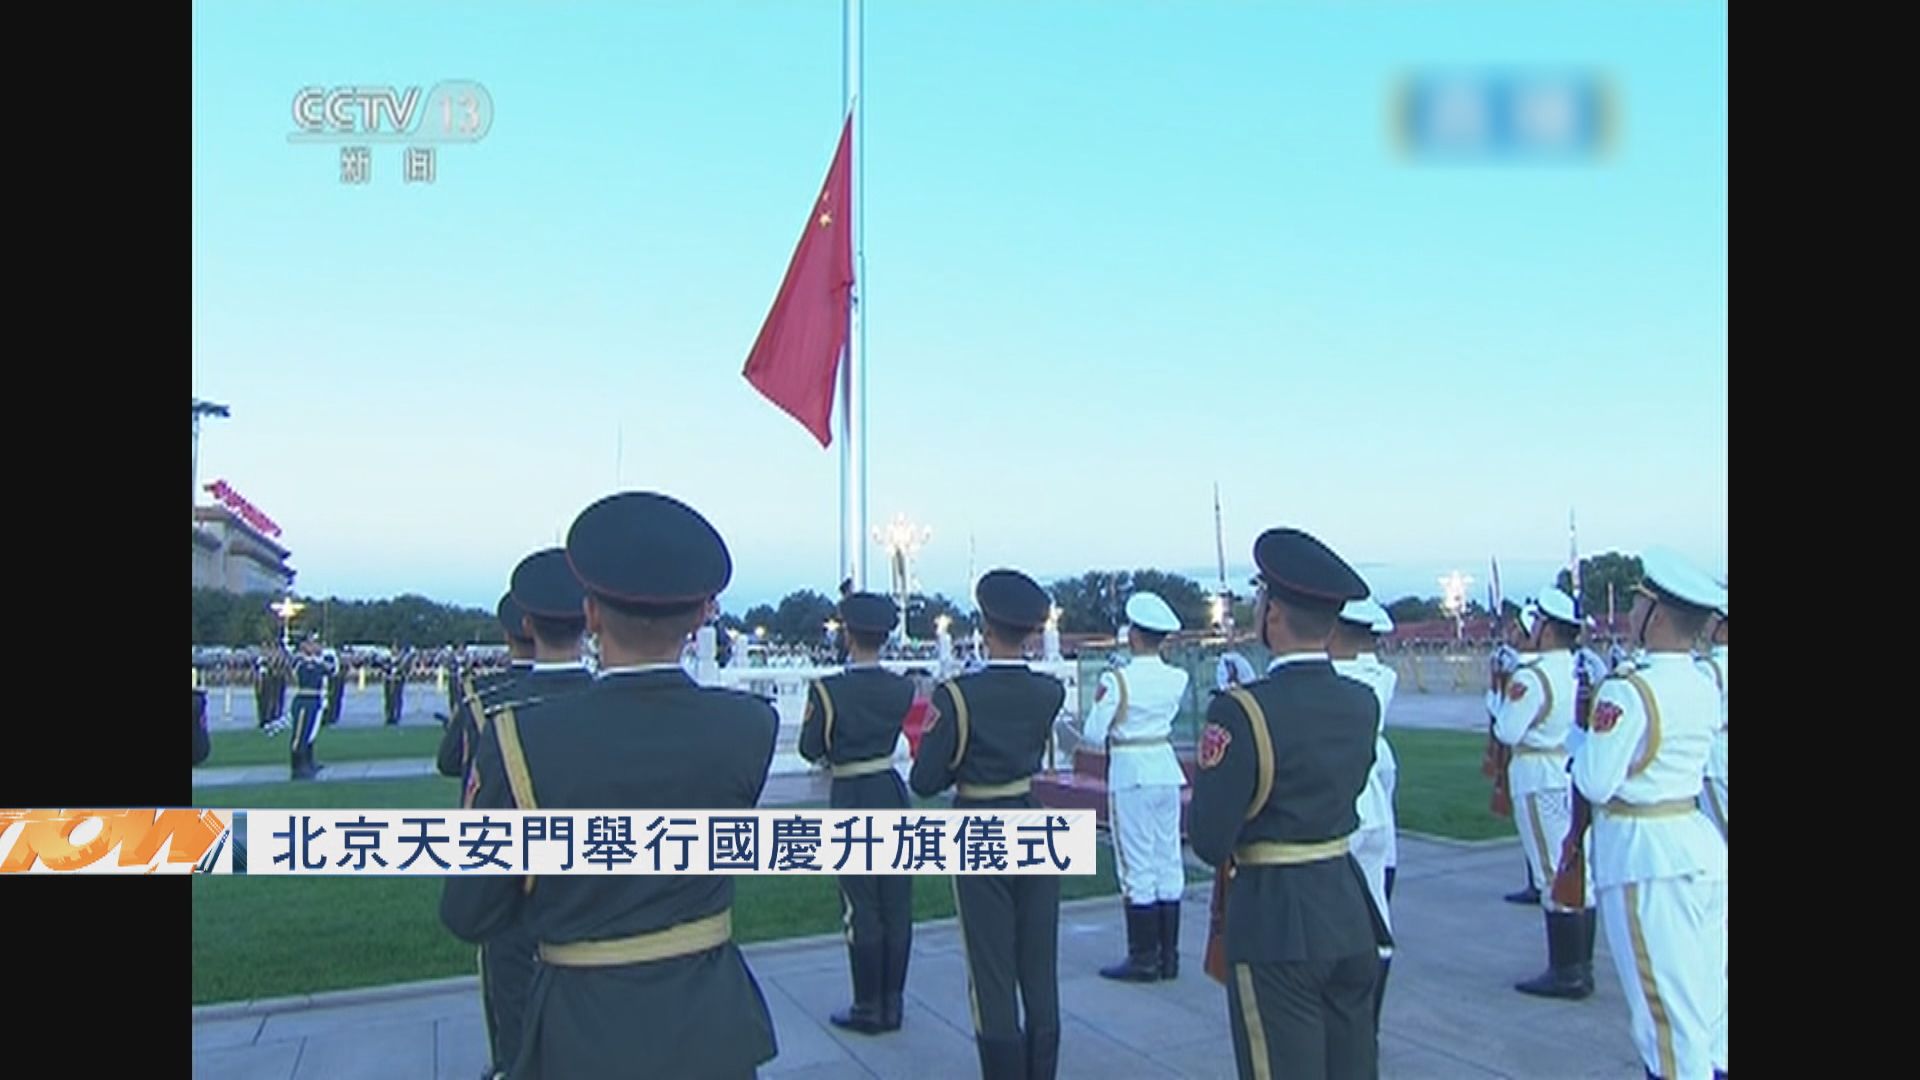 北京天安門舉行國慶升旗儀式